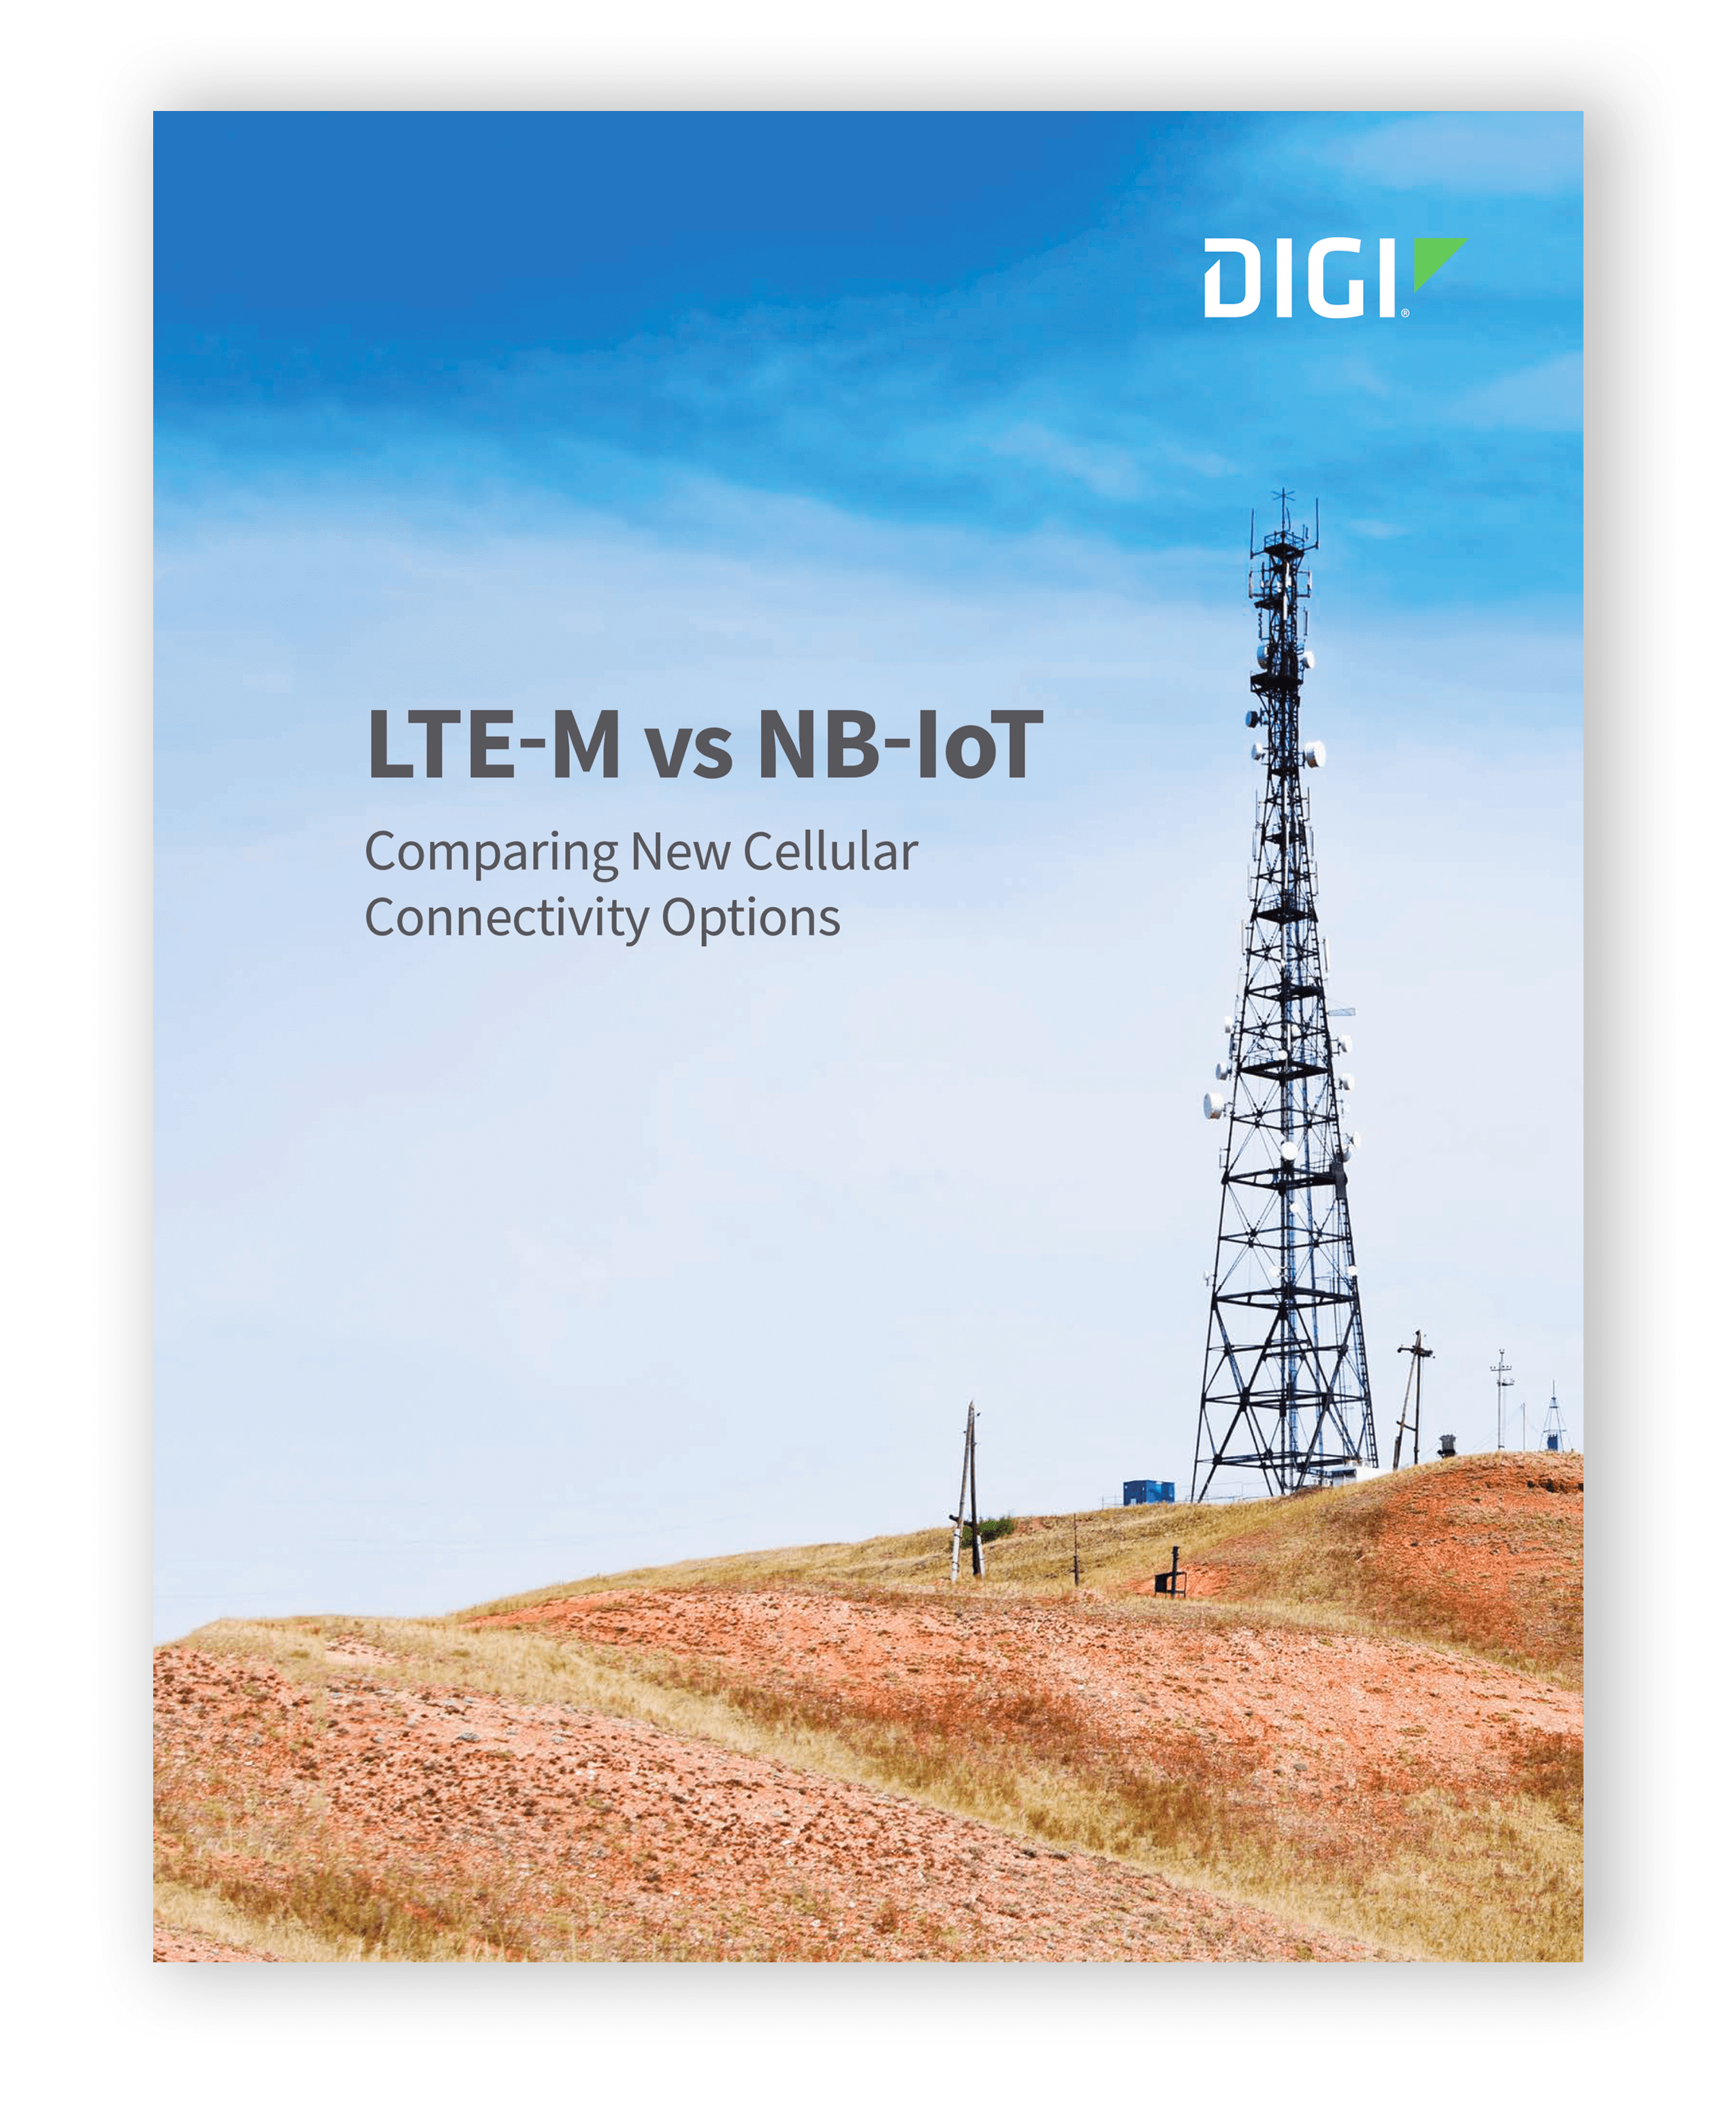 #IoT - Digi : Les réseaux cellulaires offrent de nouvelles options